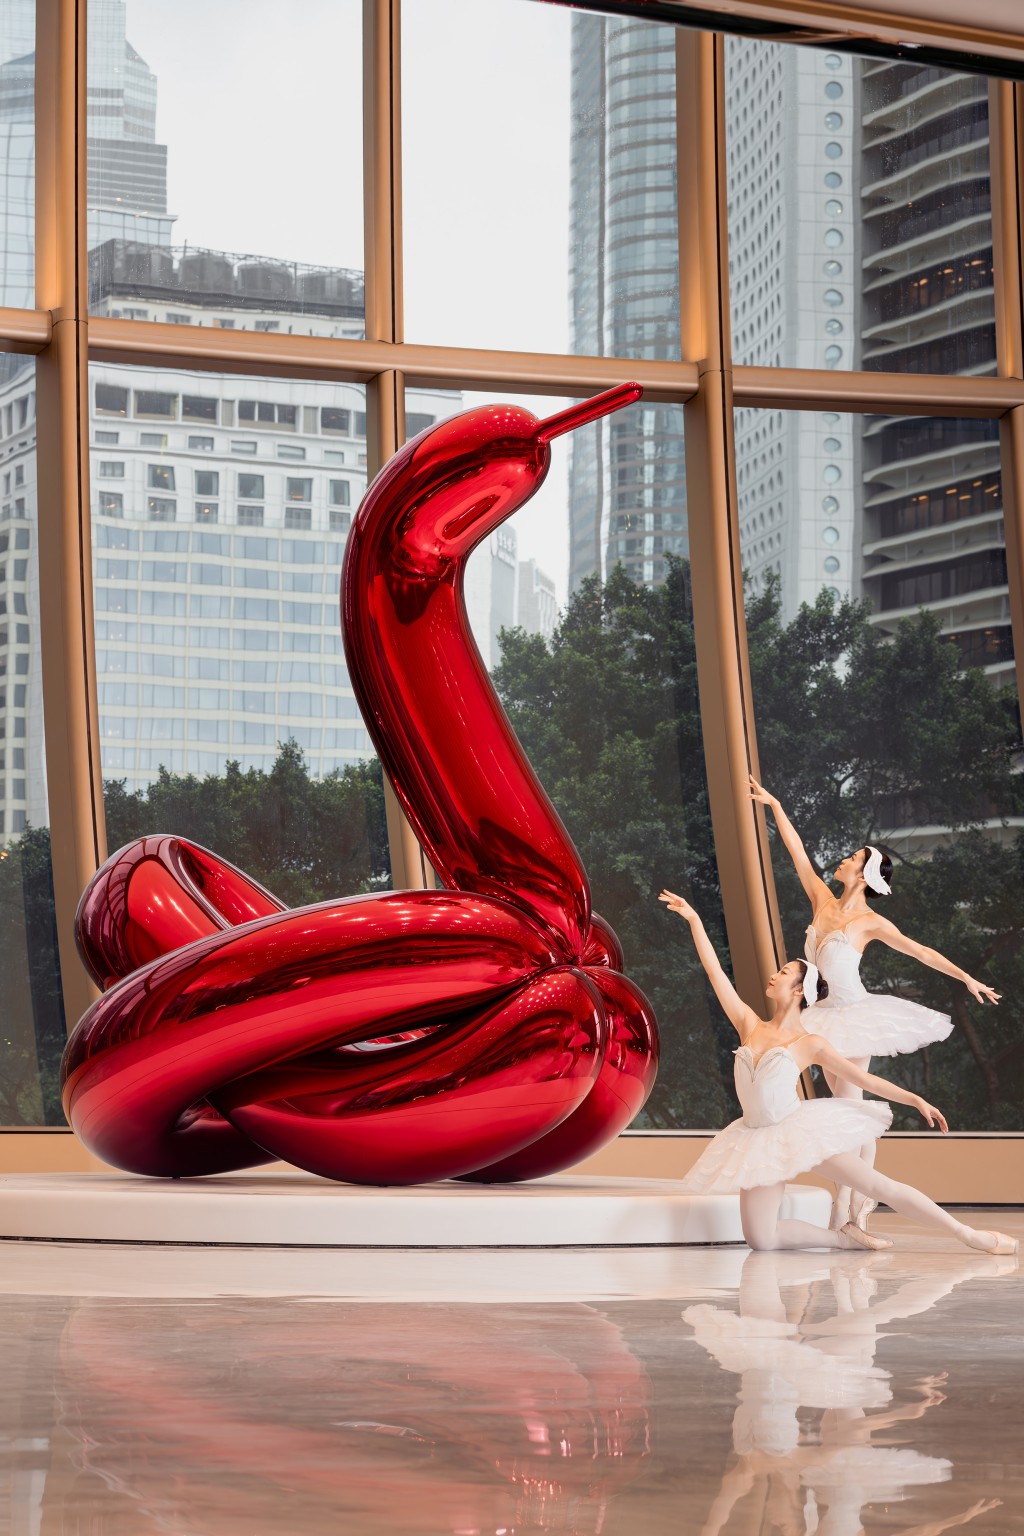 置於The Henderson大廈3樓大堂的藝術品Balloon Swan（red），出自美國藝術家Jeff Koons（傑夫昆斯）的手作。